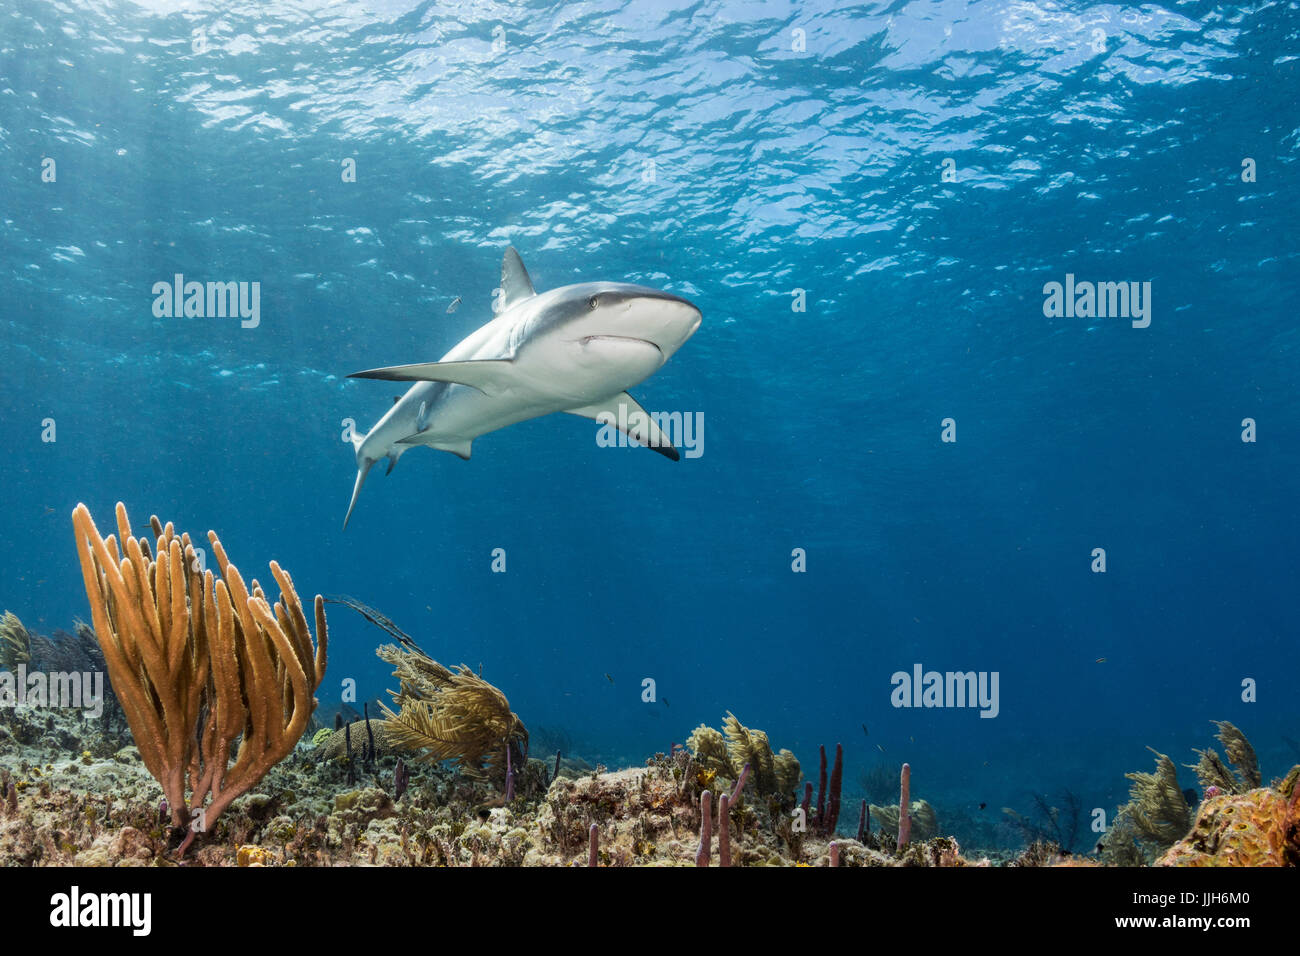 Eine Karibische Riffhaie patrouilliert in den Gewässern in der Nähe von Bimini, Bahamas. Stockfoto